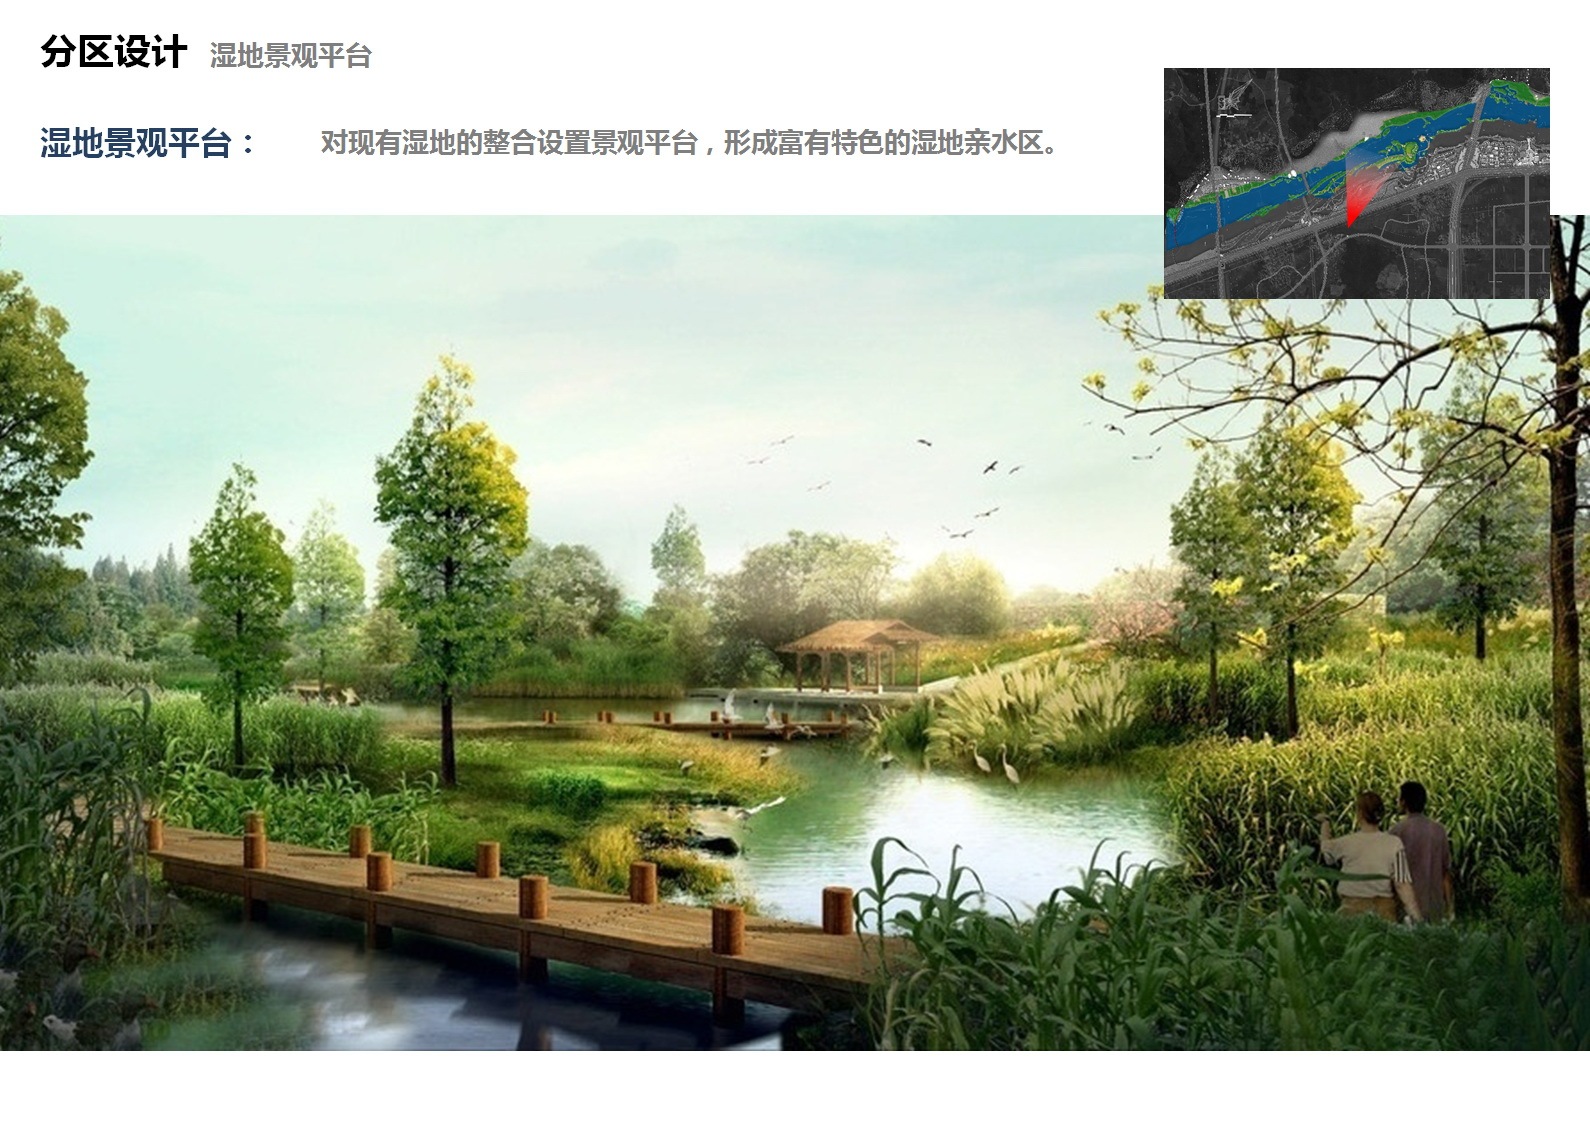 01别墅住宅小区景观植物树规划设计水系水景园林景观sketchup草图模型下载 - 庭院景观 - 免费模型库|模型下载网模型组